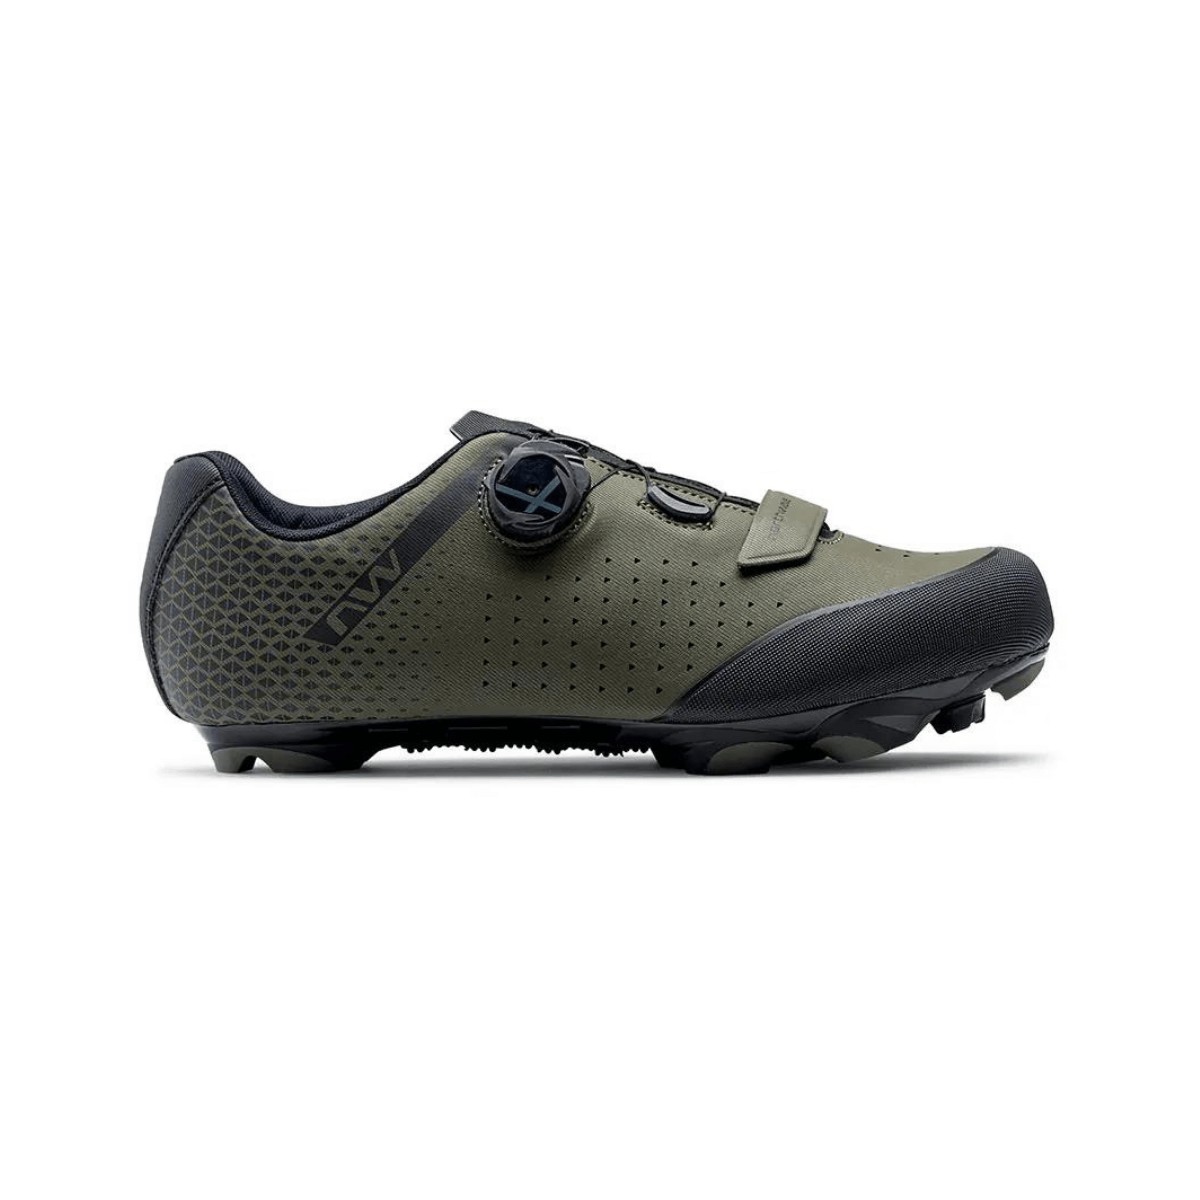 Northwave Origin Plus 2 MTB Shoes Forest, Size 43 - EUR